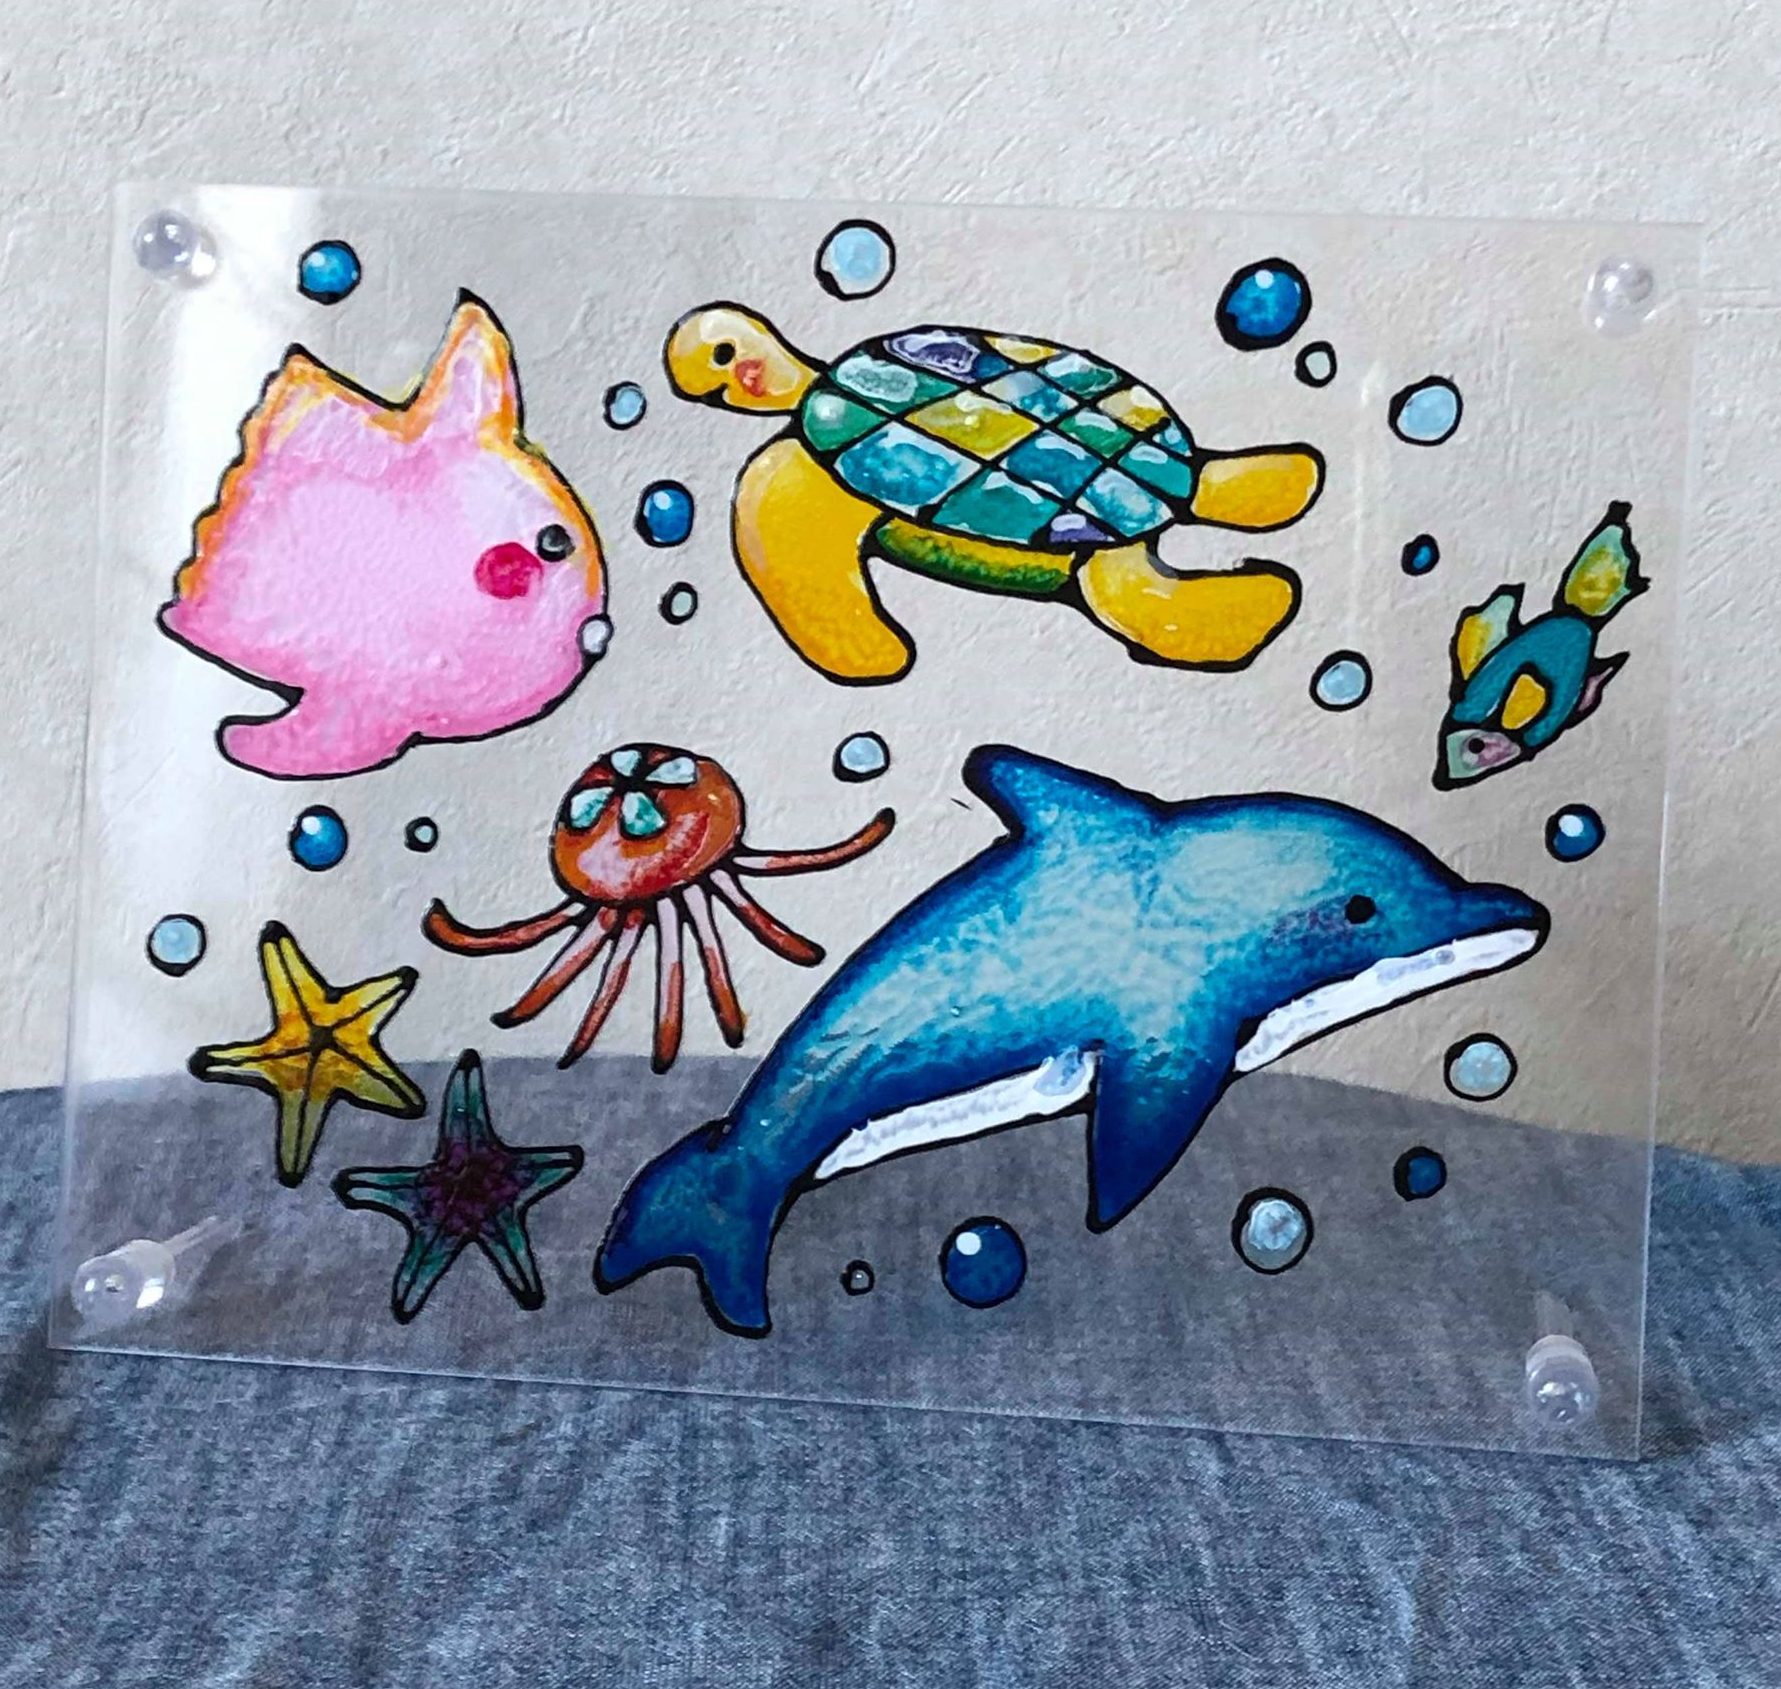 たまプラーザ 夏のオリジナル水族館フェア 19年8月11日 日 神奈川イベントプラス 親子で楽しいお得な週末お出かけ情報